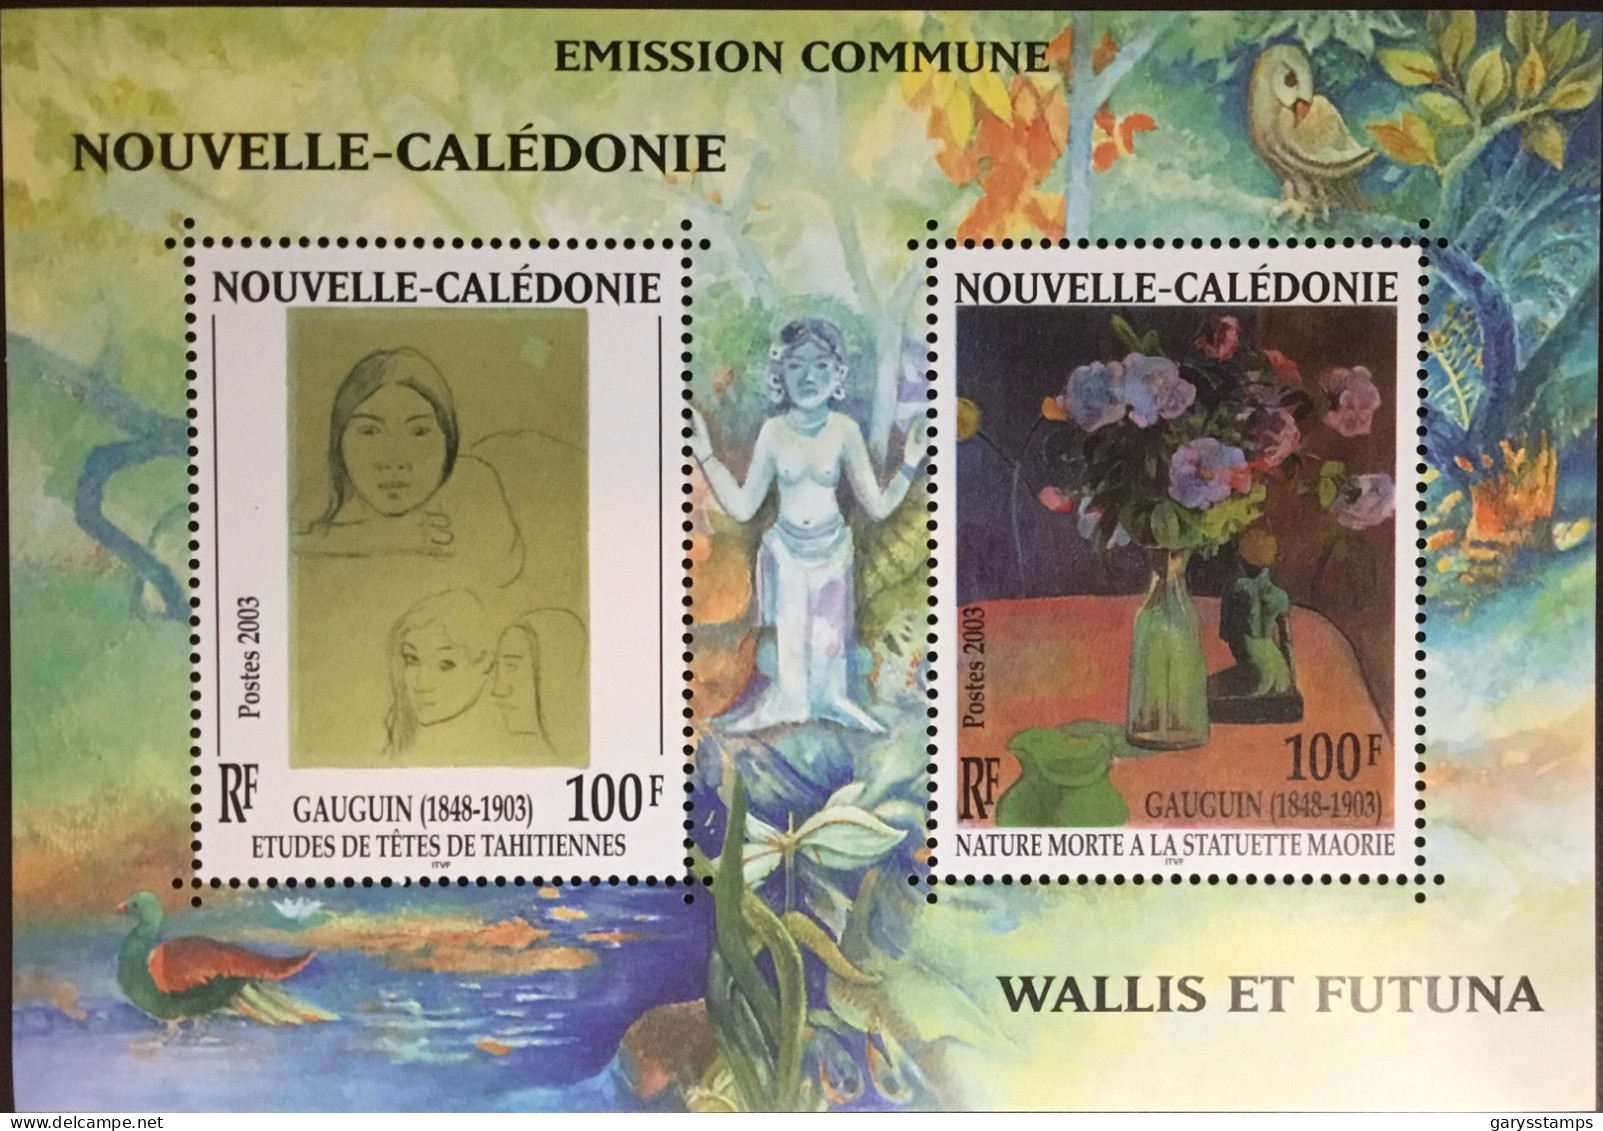 New Caledonia Caledonie 2003 Gauguin Centenary Joint Issue Minisheet MNH - Ongebruikt